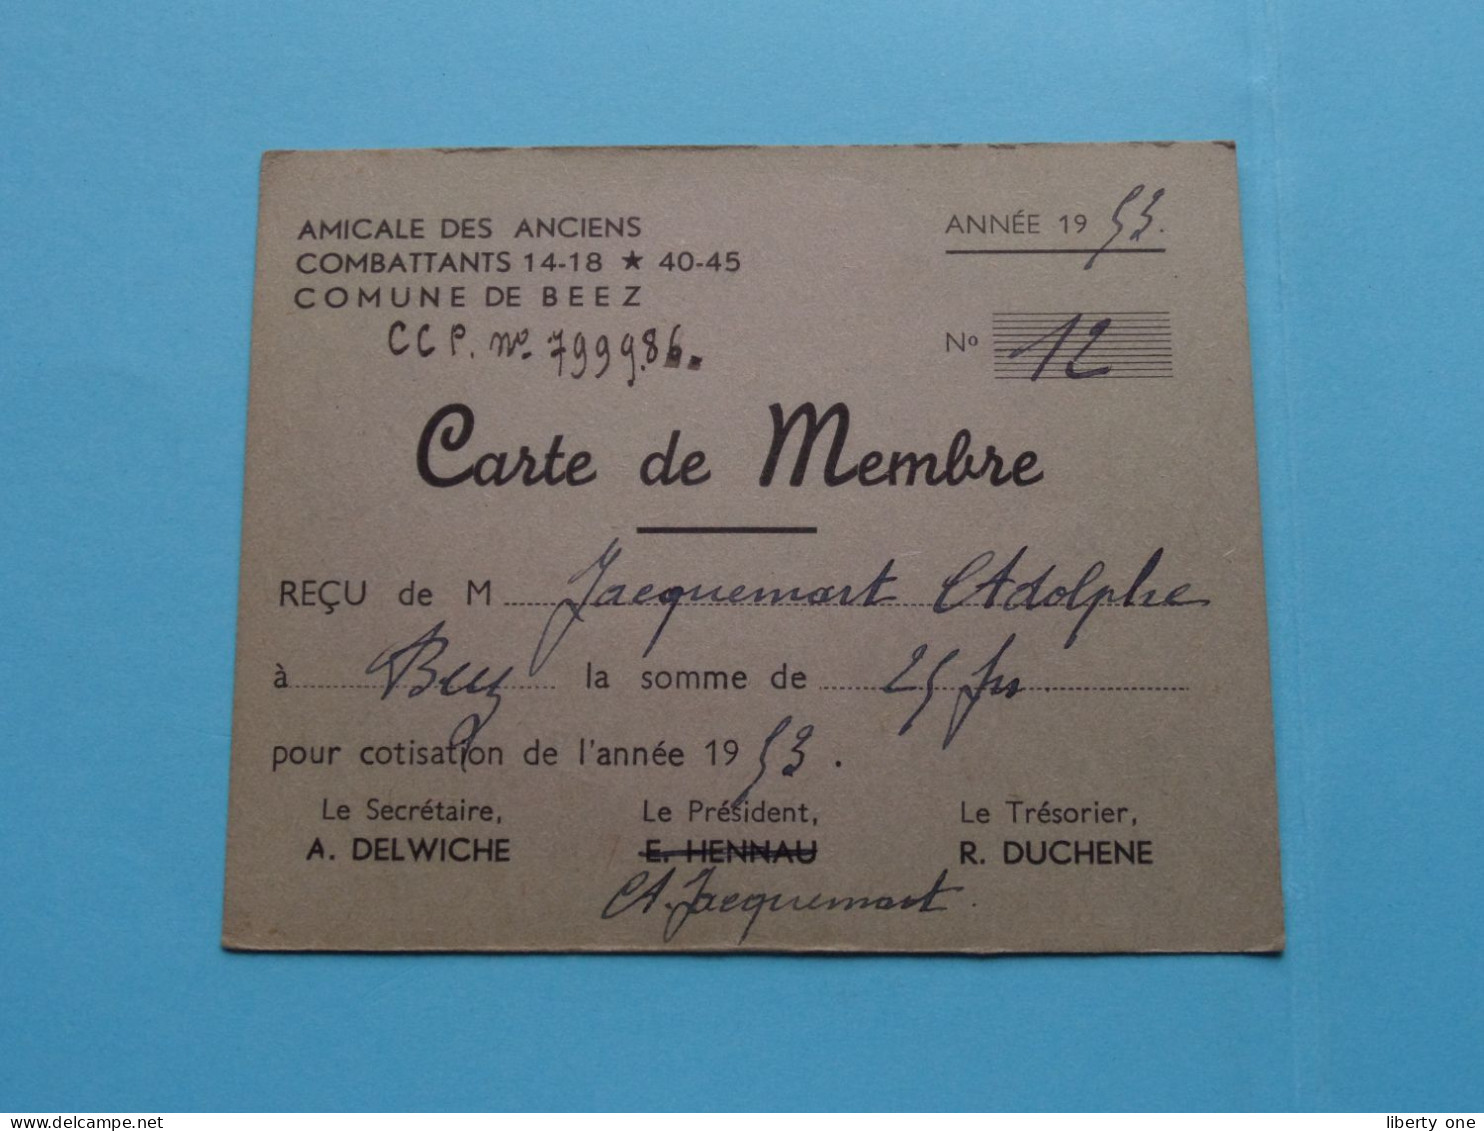 Am. Des Anciens COMBATTANTS 14-18 * 45-45 Com. De BEEZ ( Zie / Voir Scans ) 1953 ( Carte De Membre ) ! - Cartes De Membre